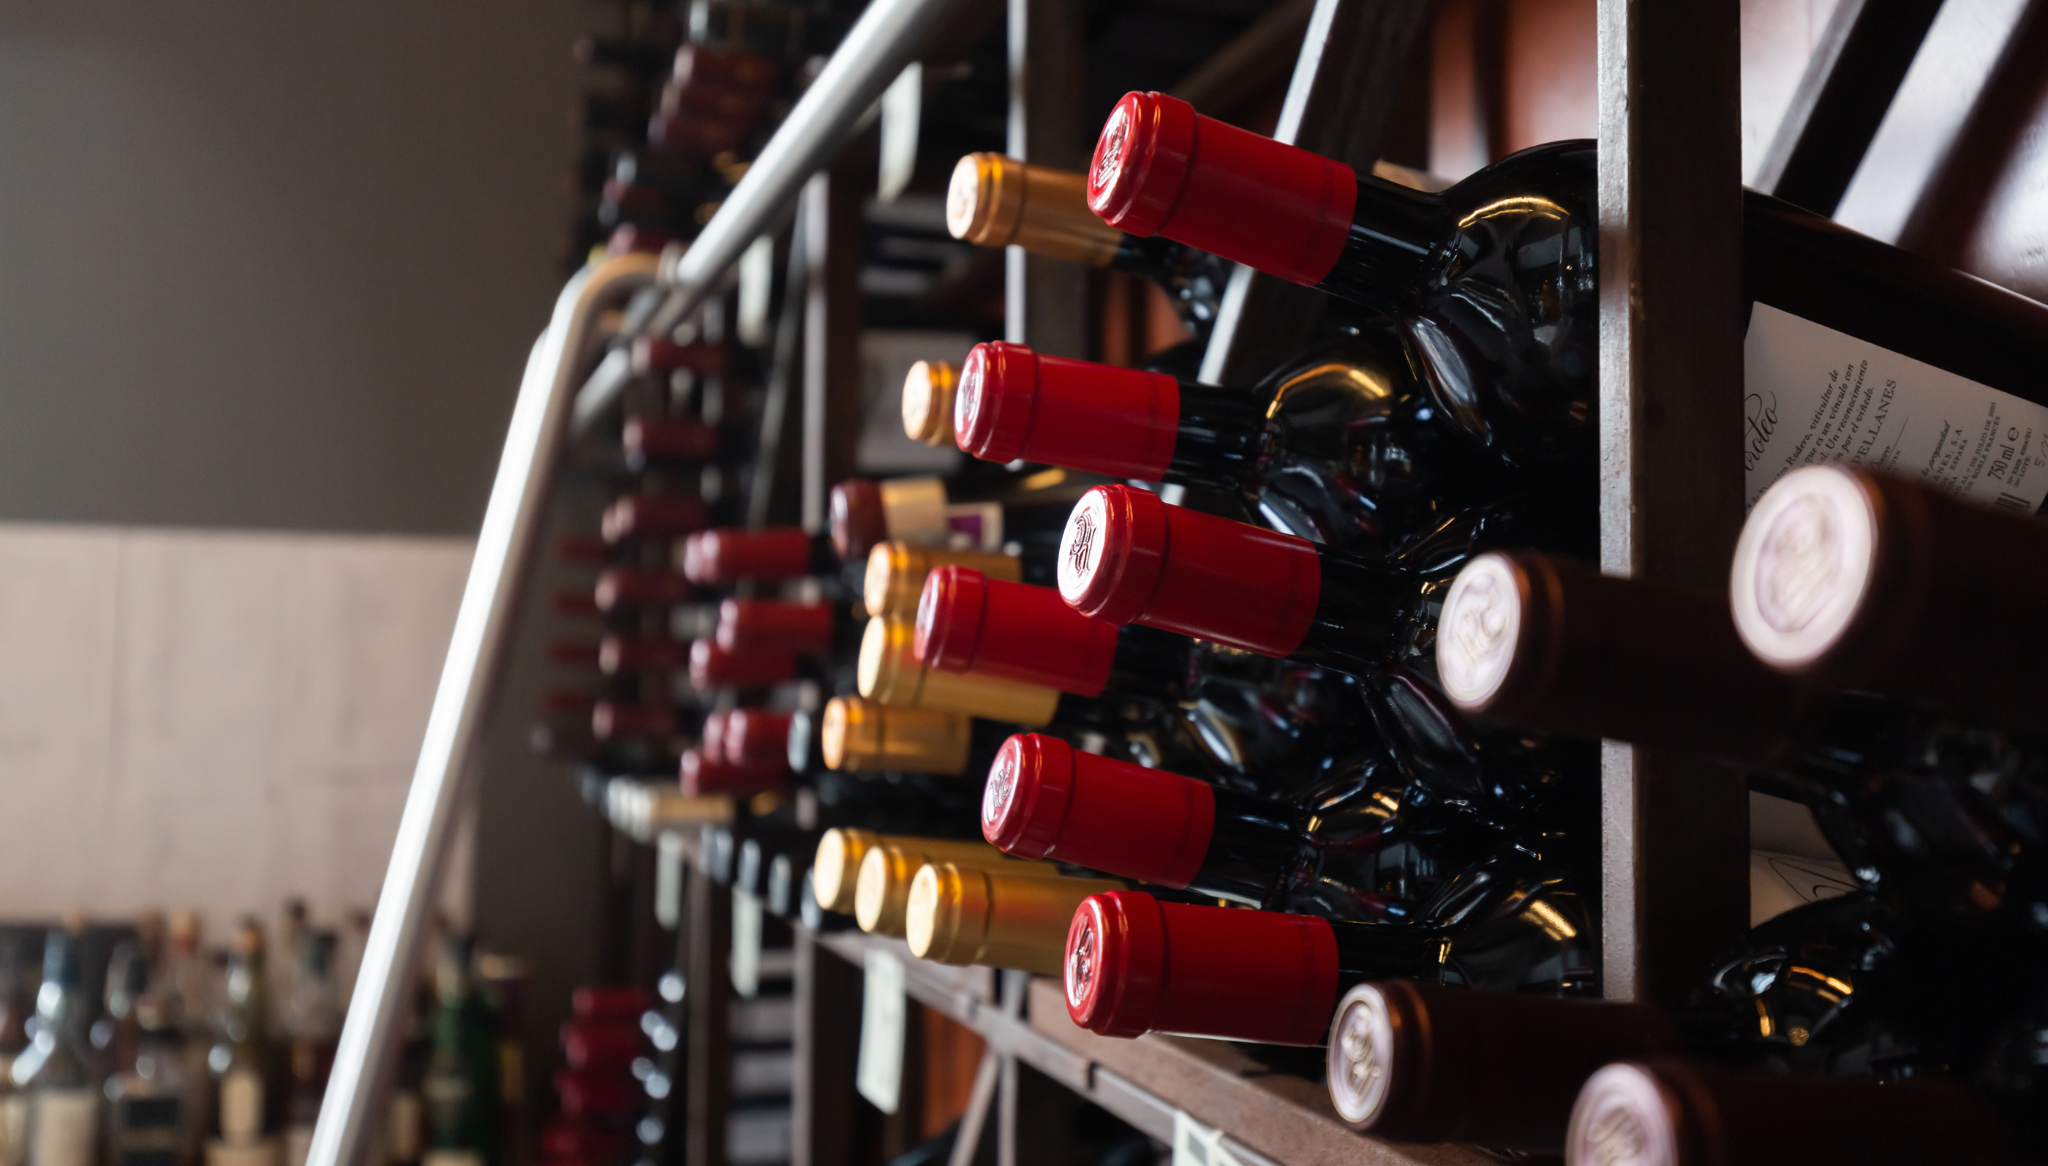 Elige entre toda su variedad de vinos – Mediterrasian